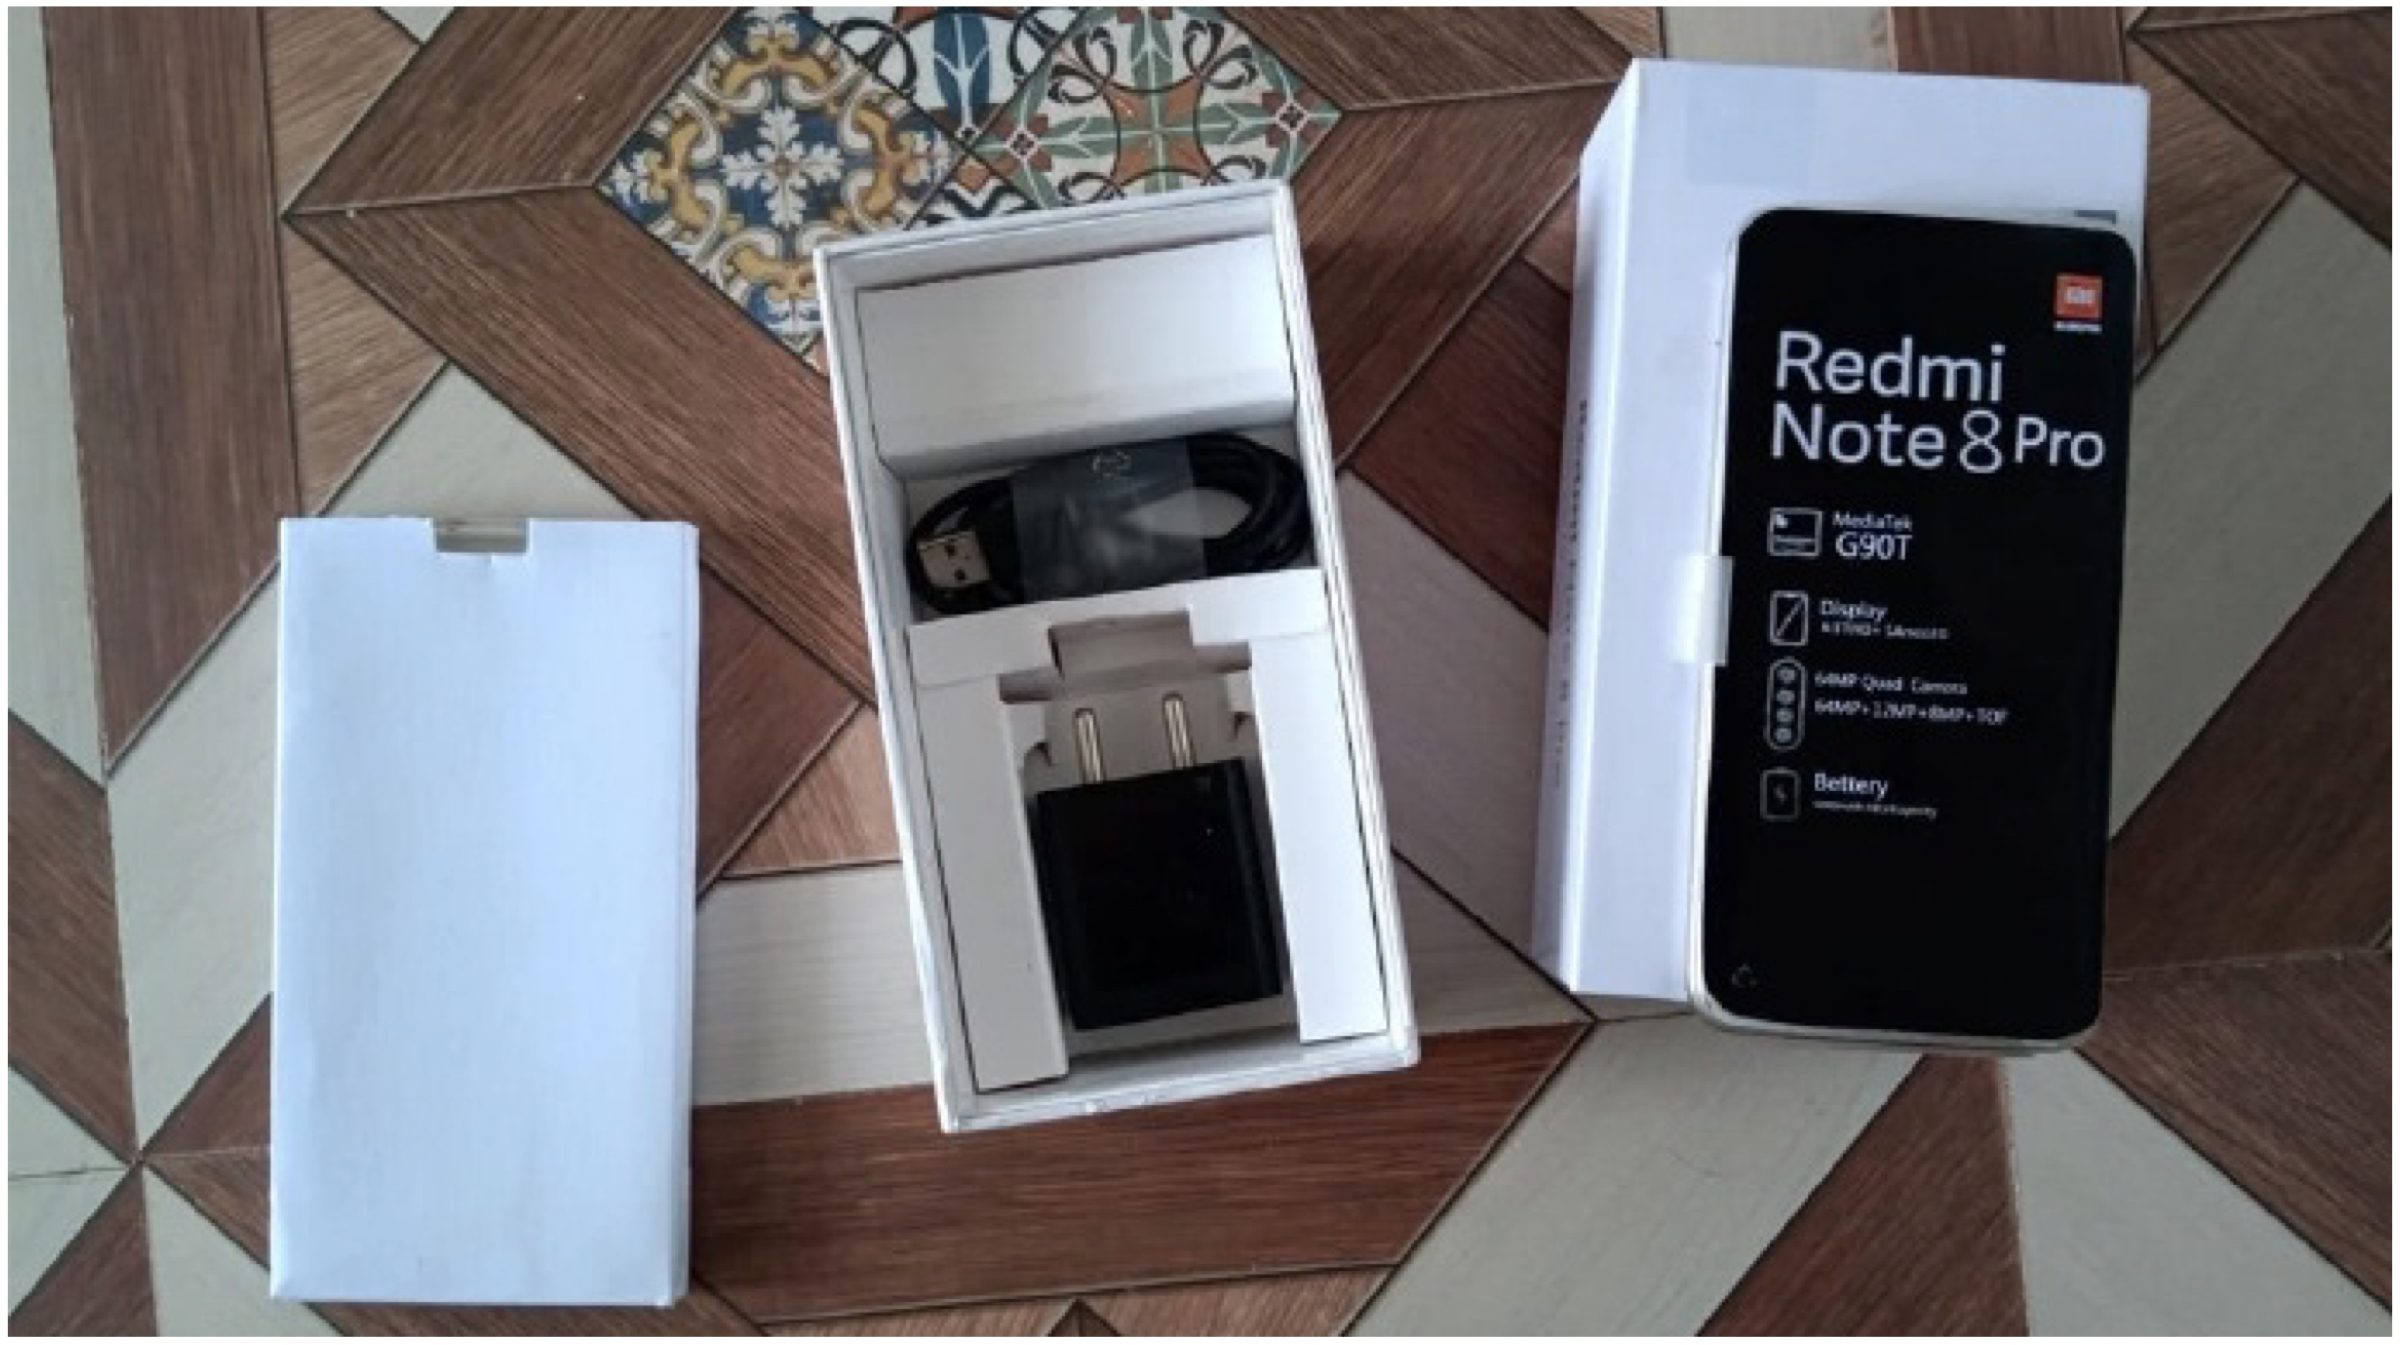 Redmi Note 8 Tanggal Peluncuran Pro Terungkap, Gambar Langsung Juga Bocor